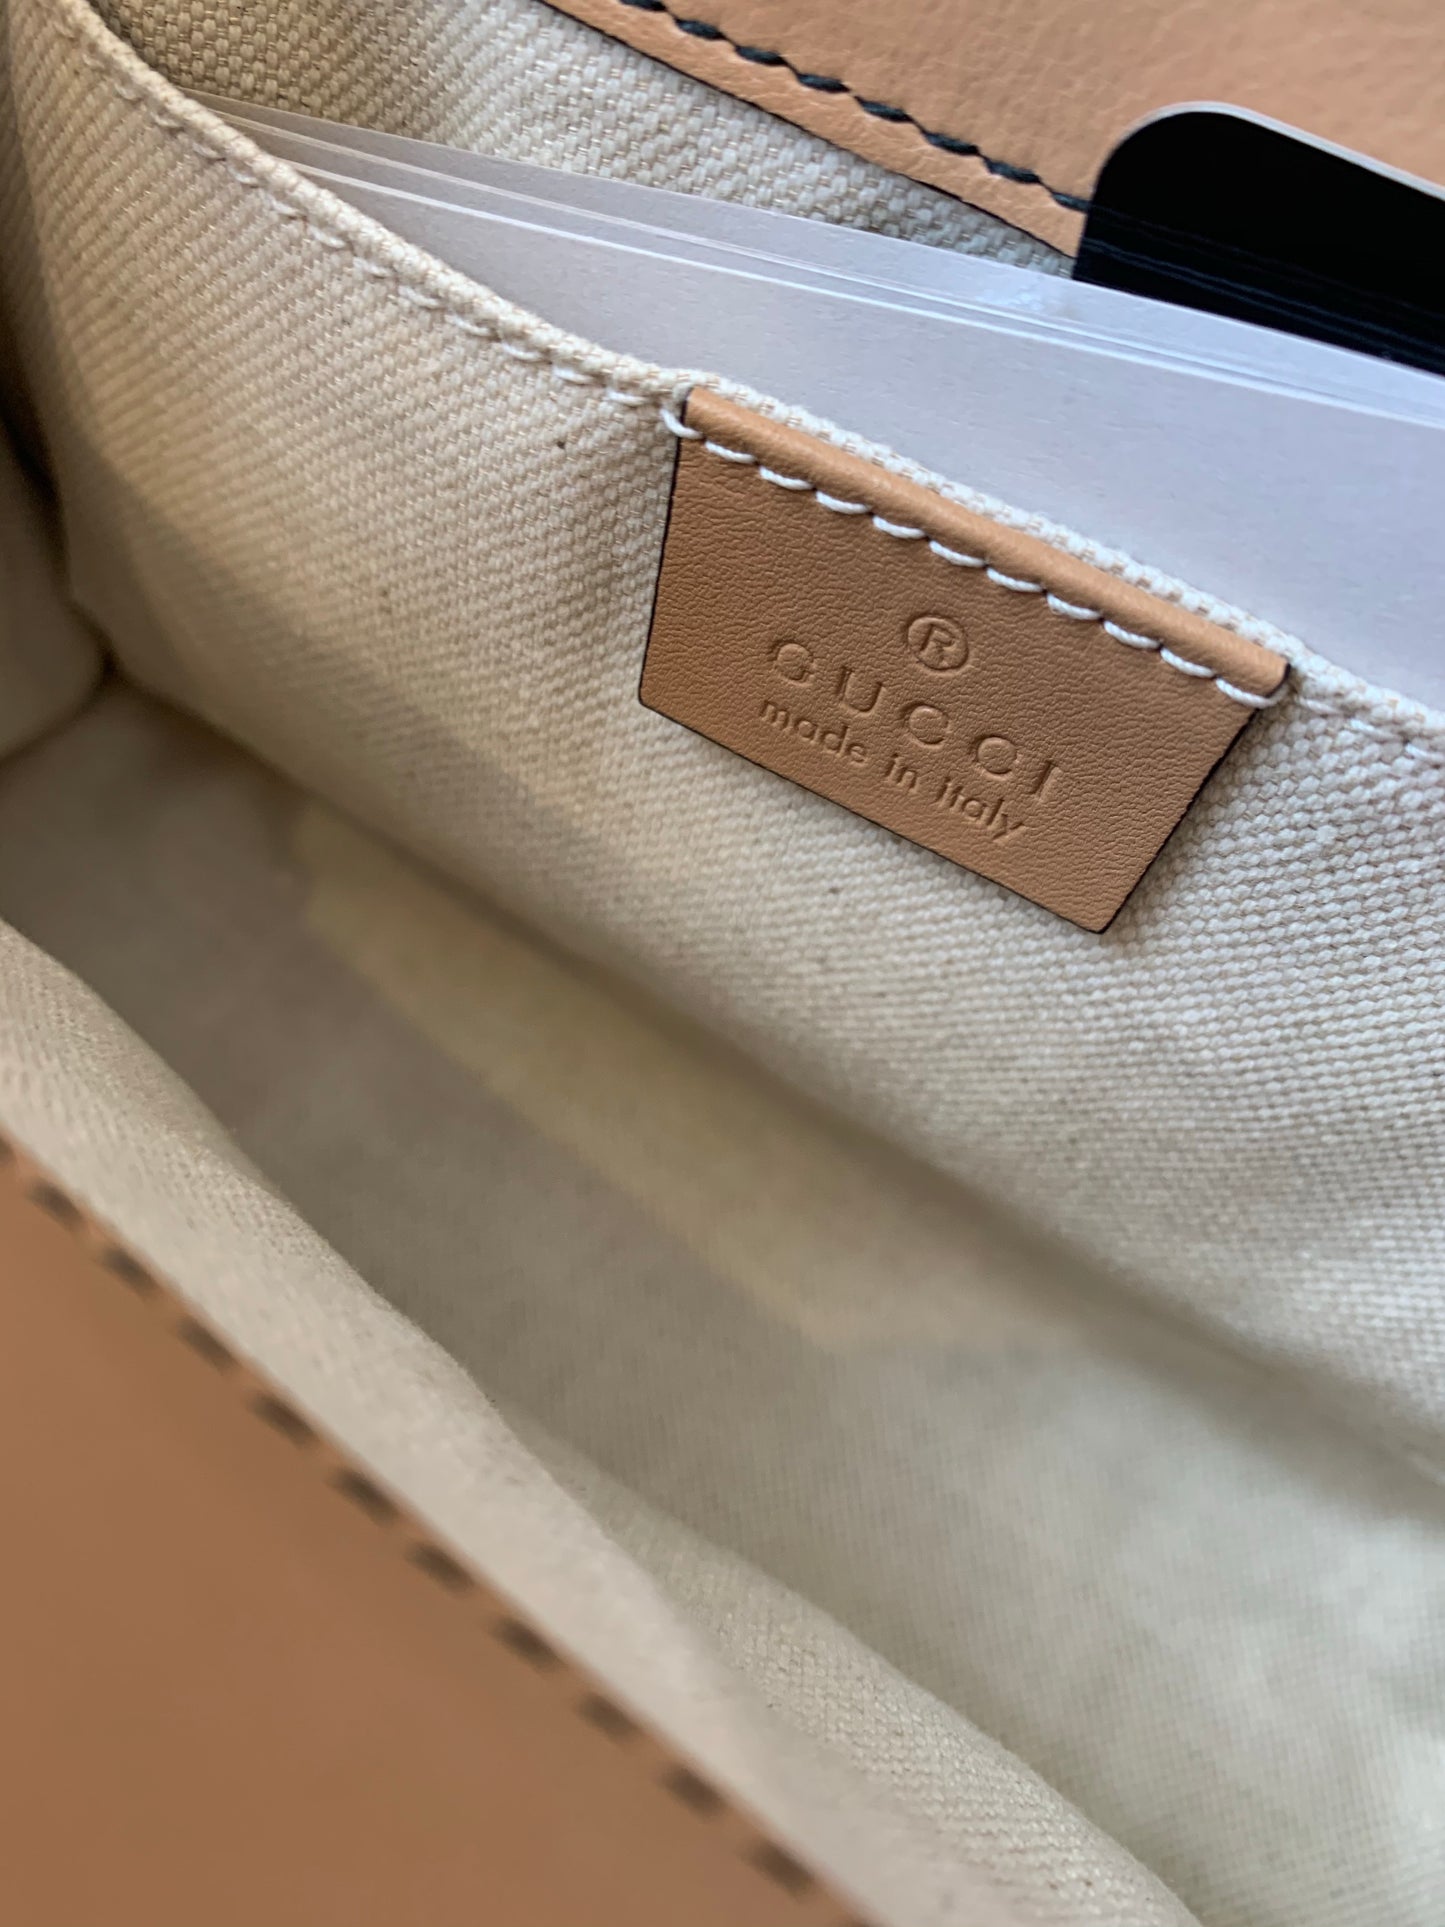 Gucci Emily Guccissima Shoulder Bag